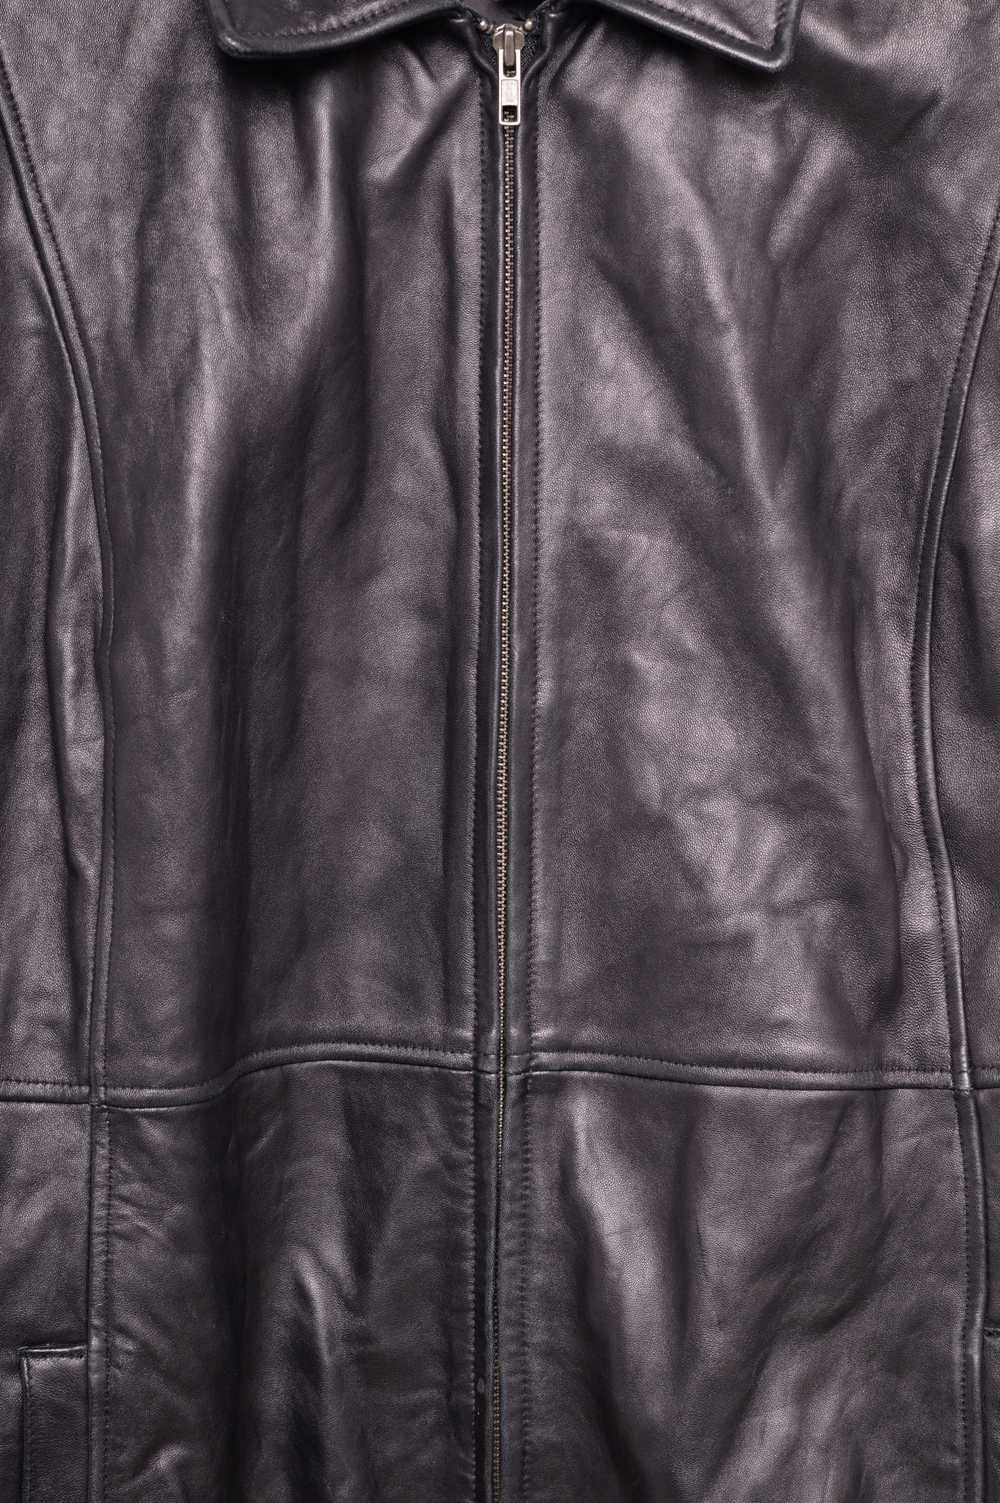 1990s Leather Jacket - image 3